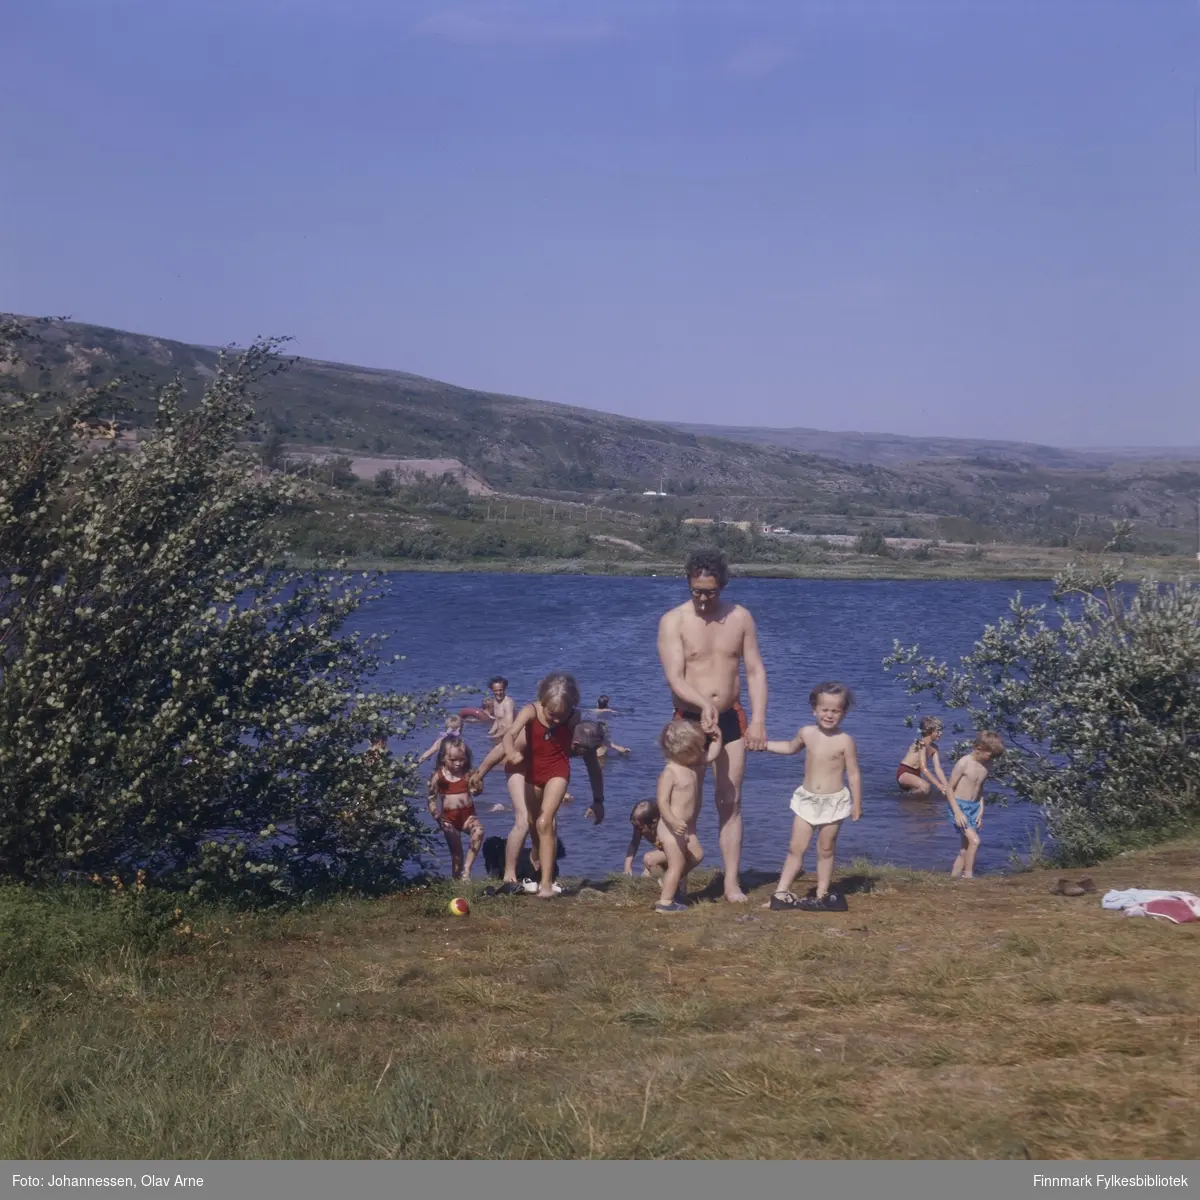 Foto av mann og barn som bader i Jovannet i Båtsfjorddalen

Mann som står i vannet (til venstre) er Eilif Eriksen 

Mann i midten kan være Sveinung Wilsgård (usikker identifisering)

Foto trolig tatt på 1960/70-tallet